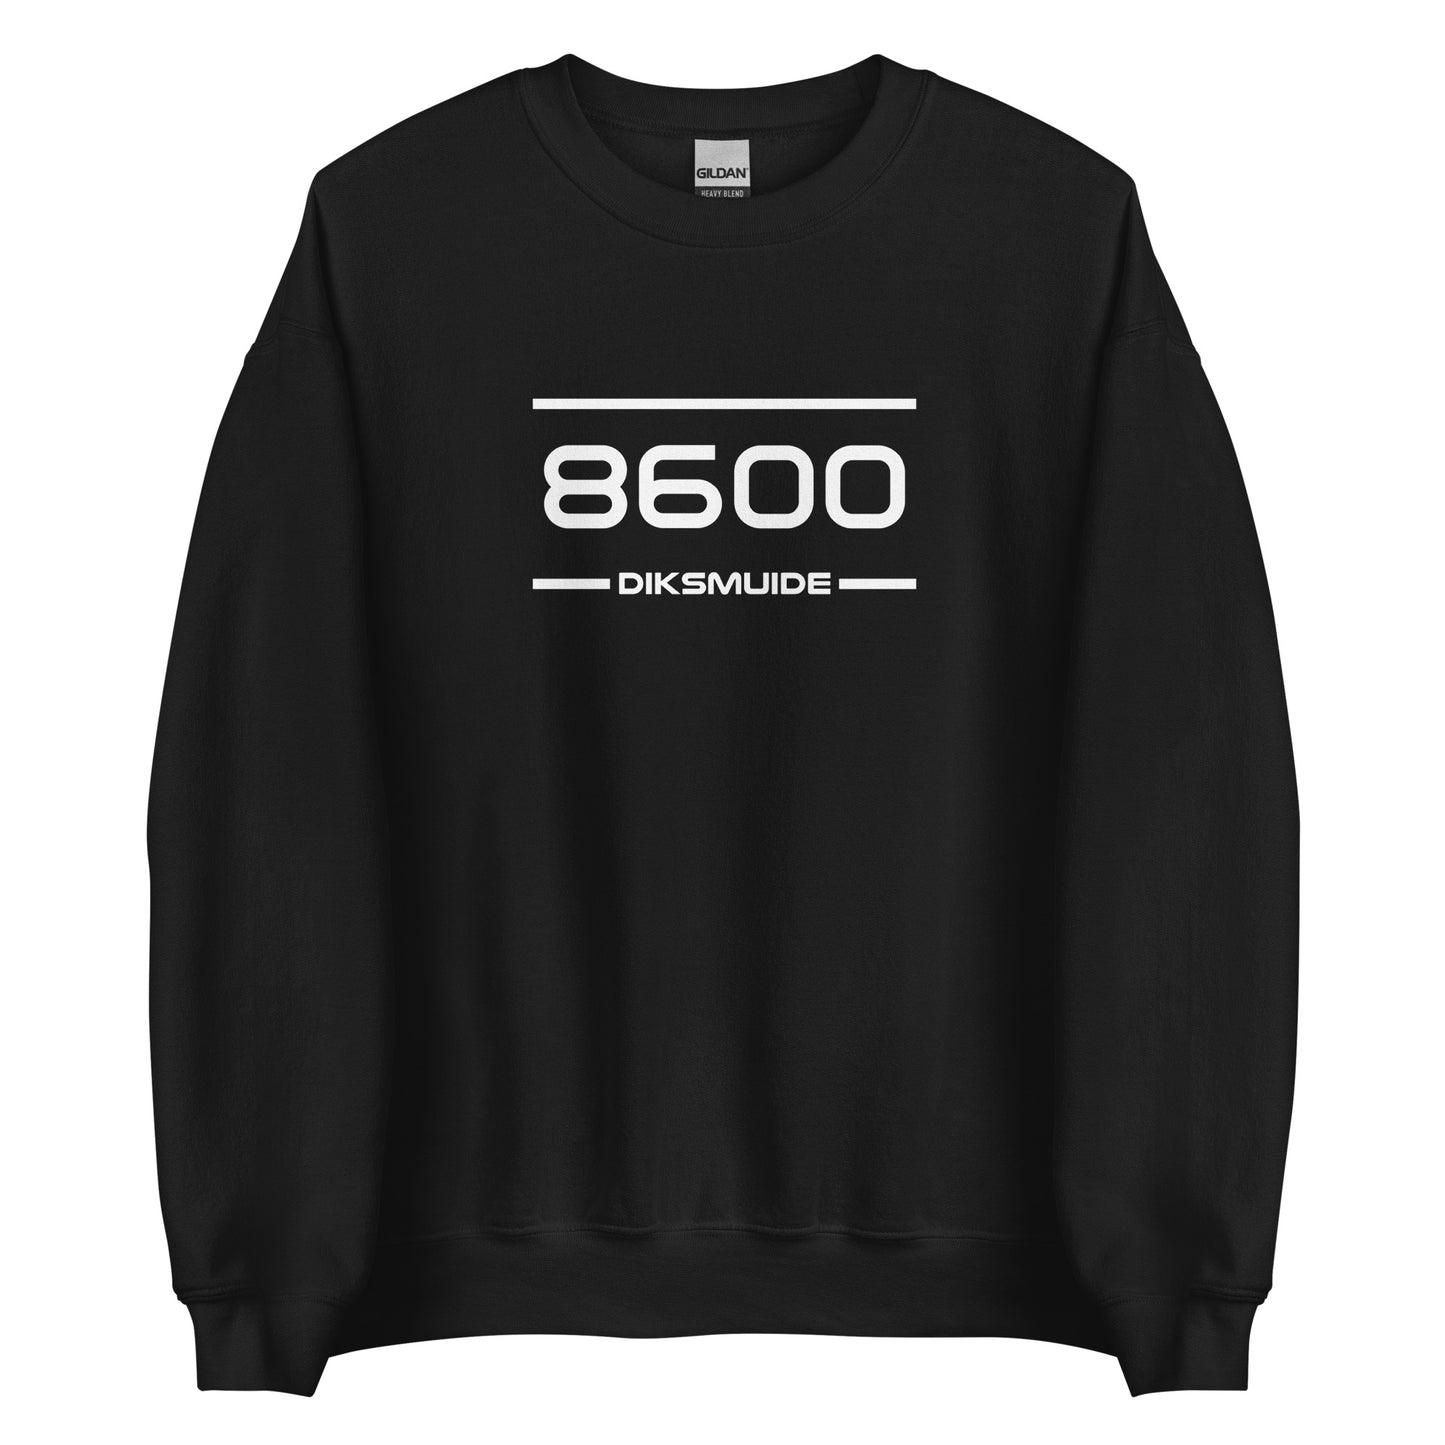 Sweater - 8600 - Diksmuide (M/V)